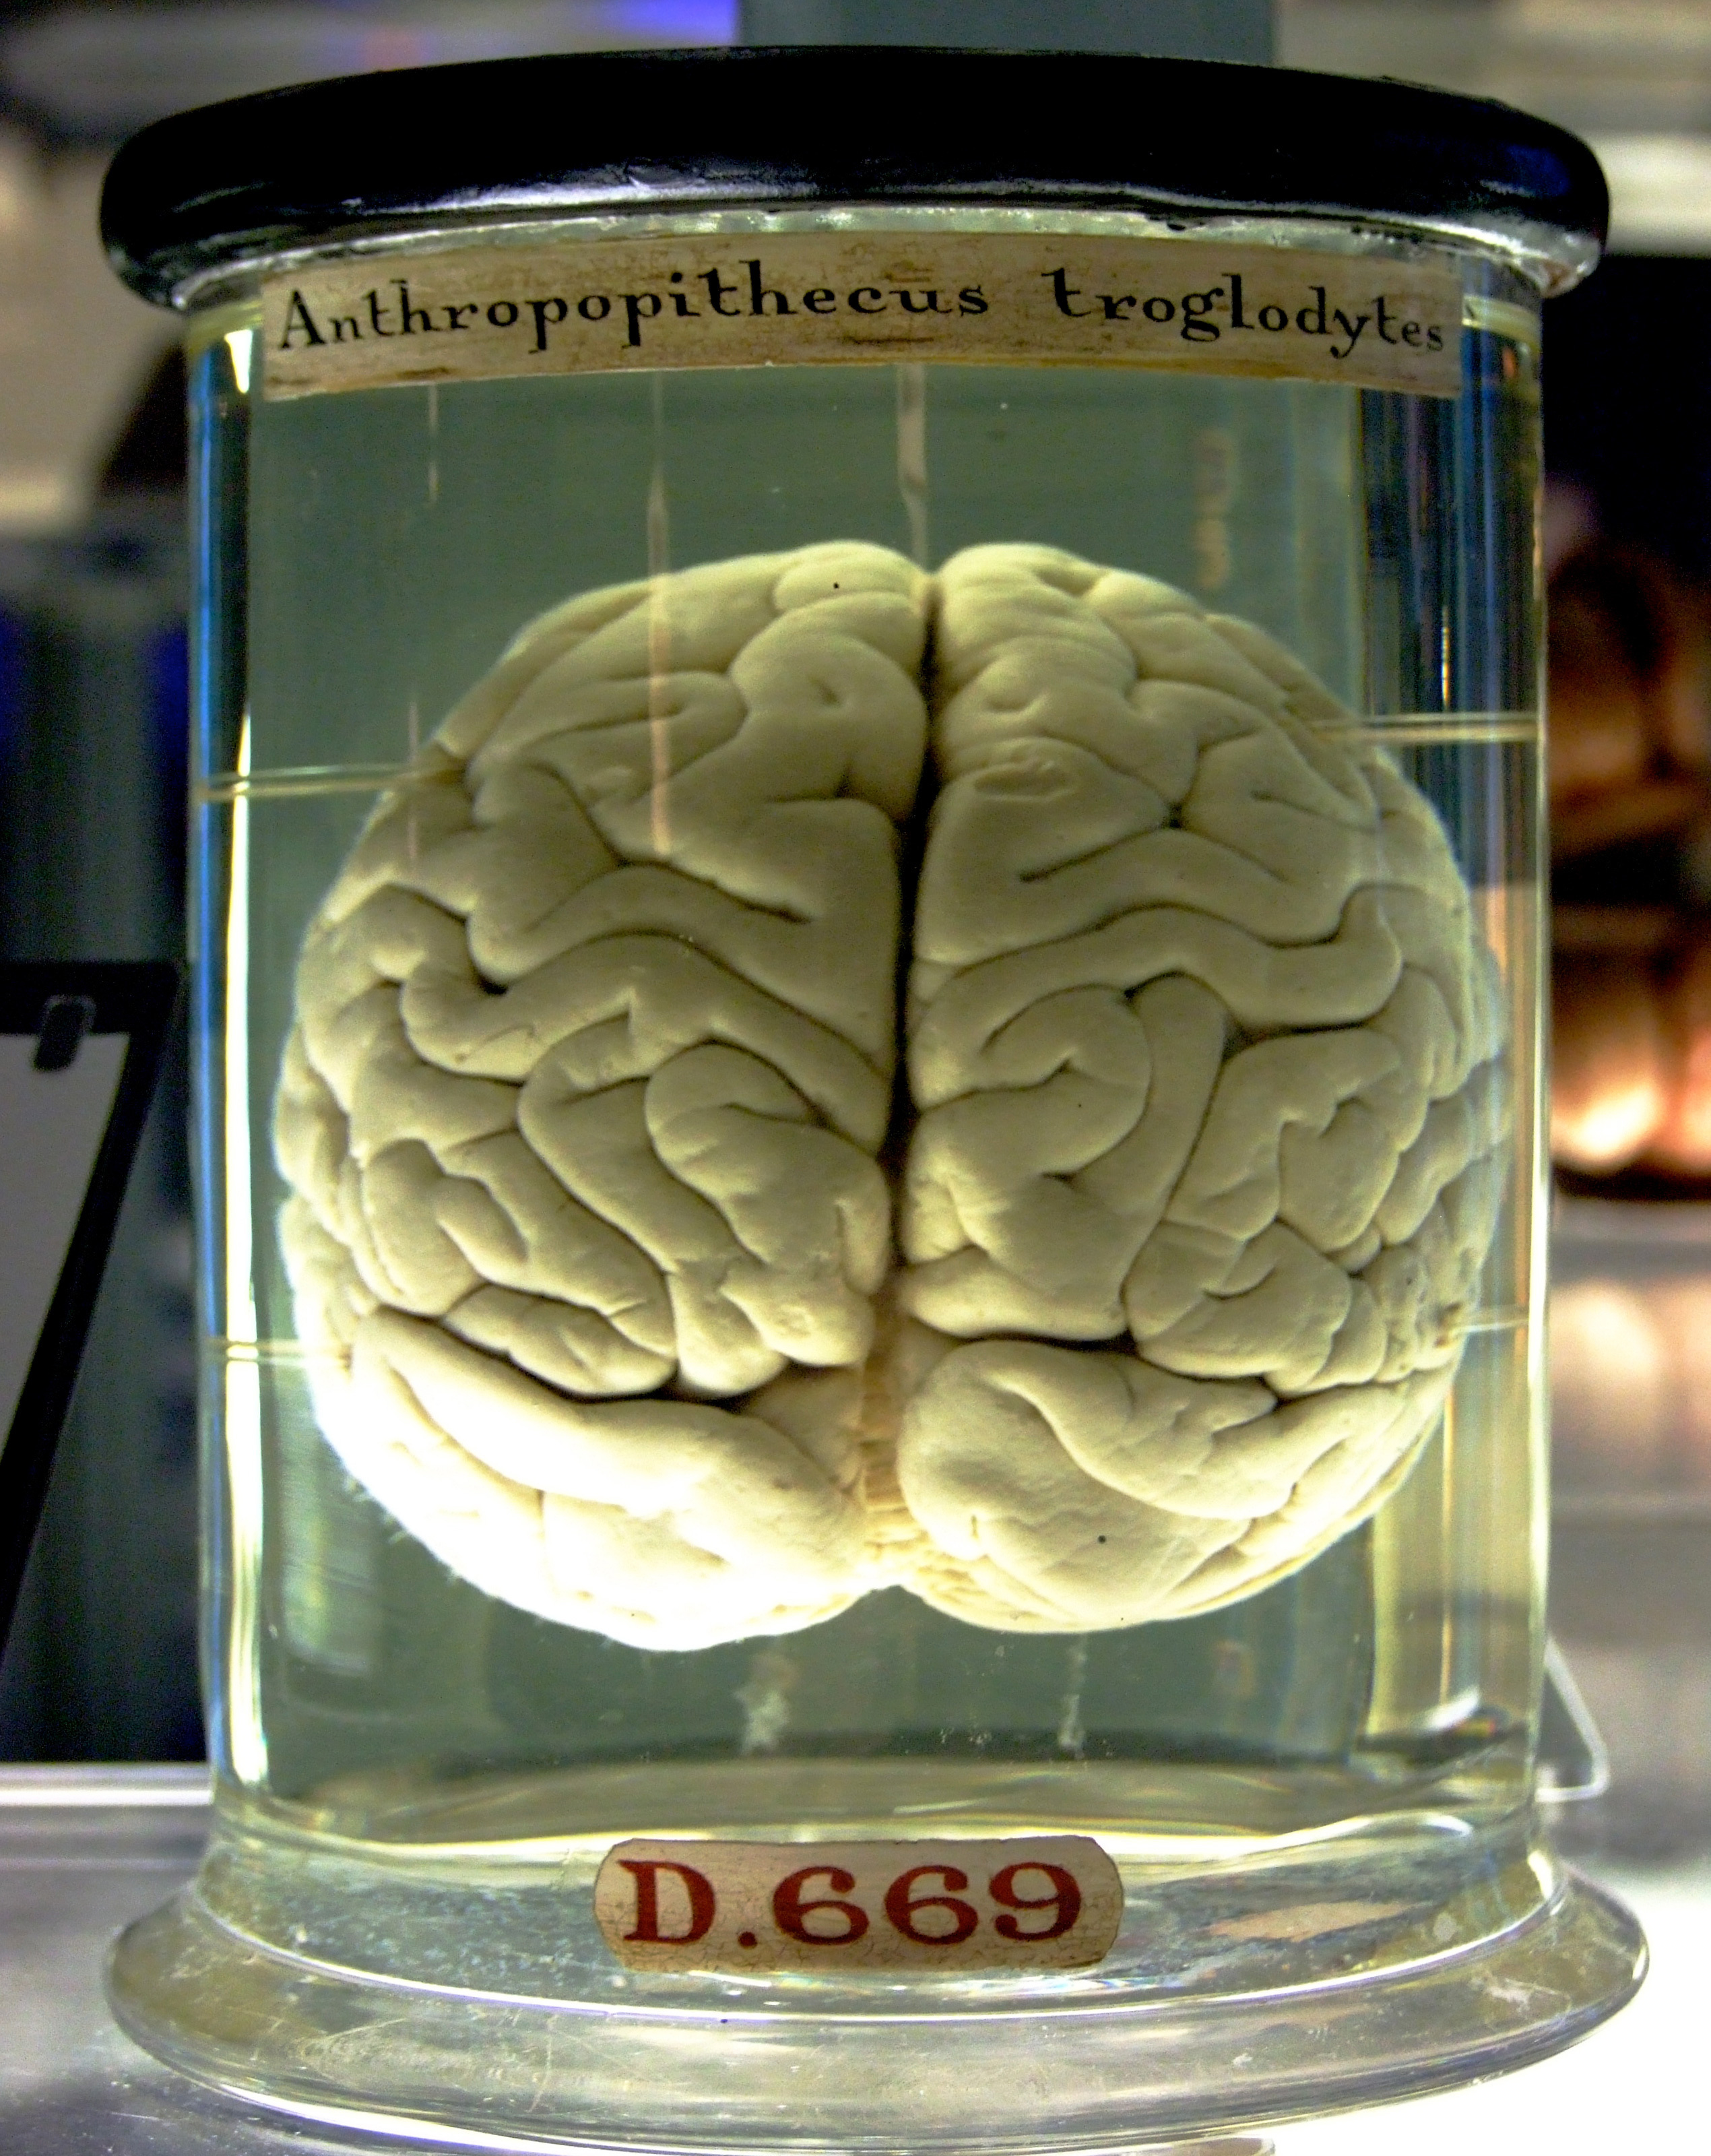 A chimpanzee brain preserved in a jar